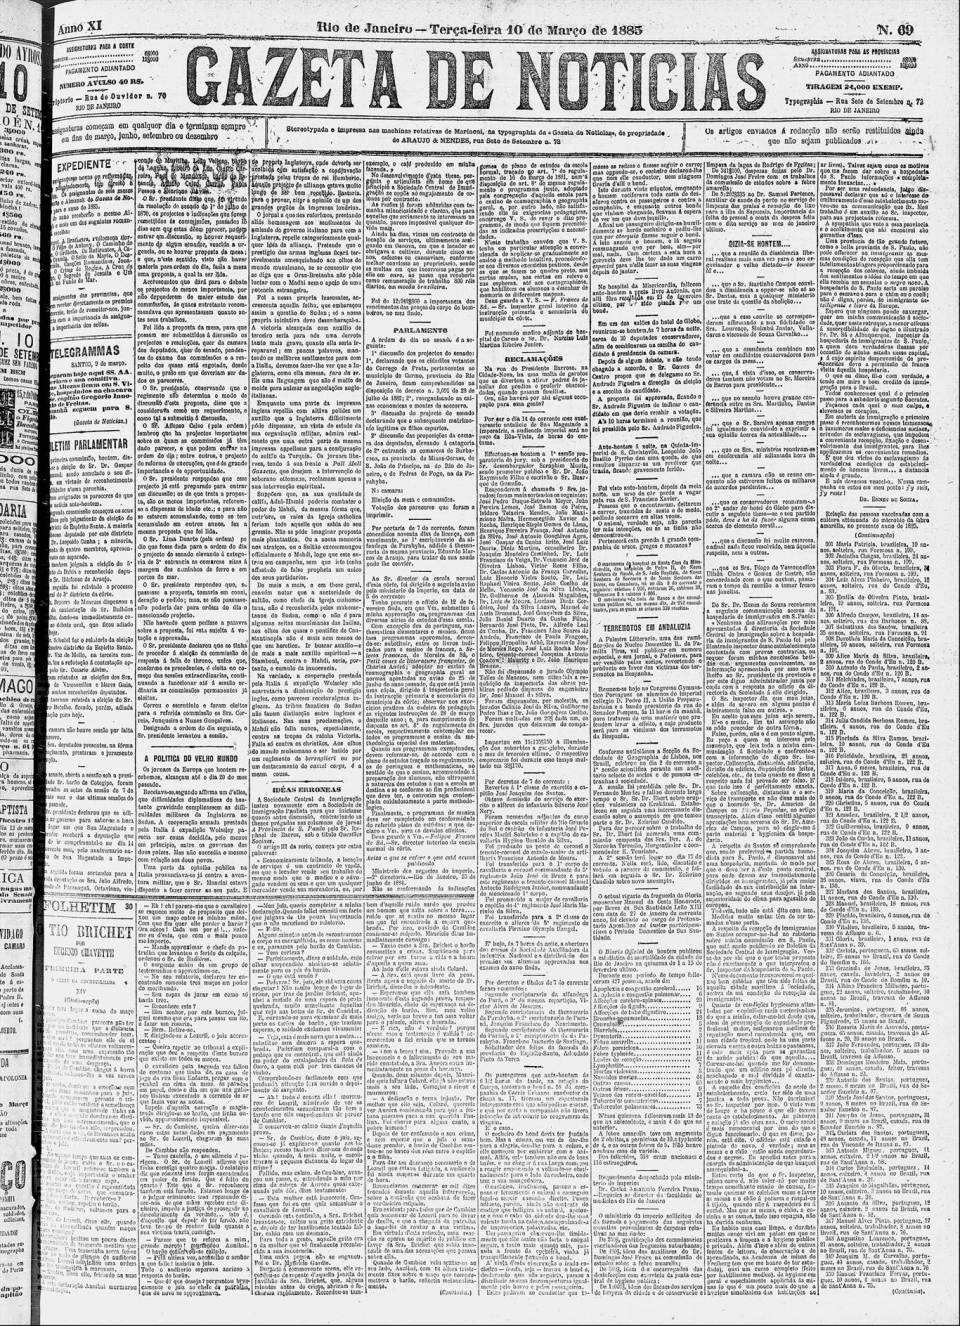 art-hospedaria-do-bom-retiro-replica-2-gazeta-de-noticias-10-march-1885-folha